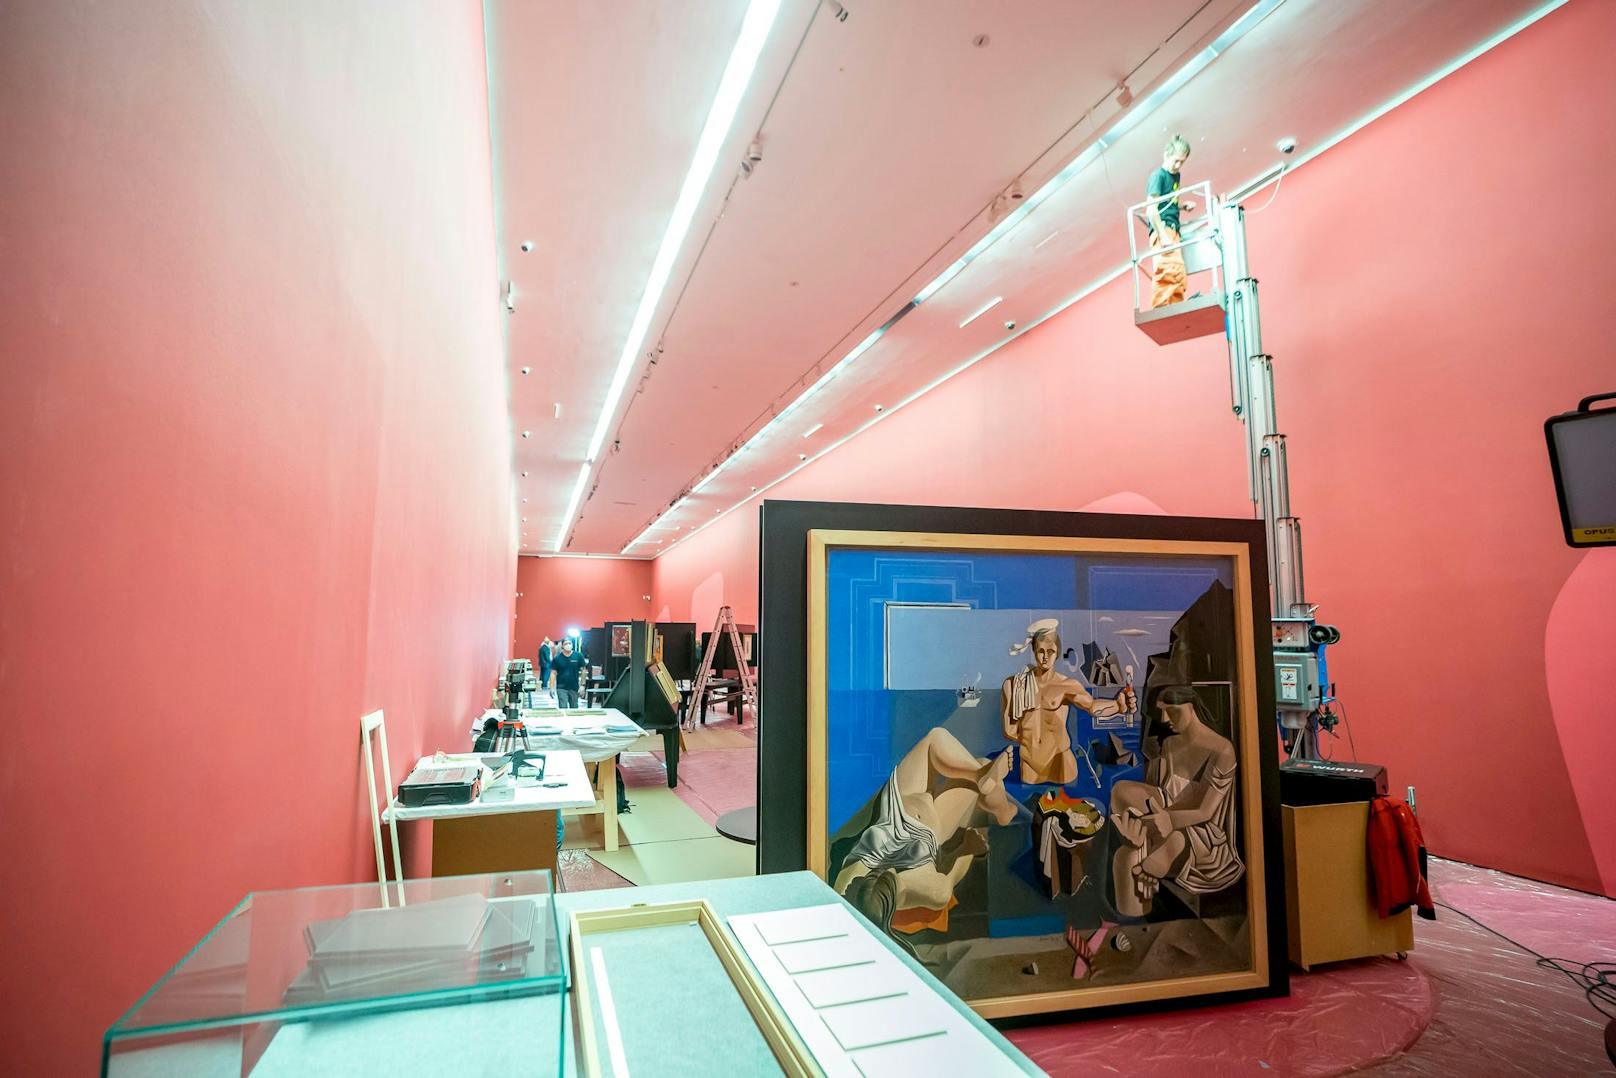 Ausgestellt werden die Werke in einer schlangenförmigen Form. Die Ausstellungstexte, die sich links und rechts an den Wänden befinden, begleiten die Besucher durch die Schau.